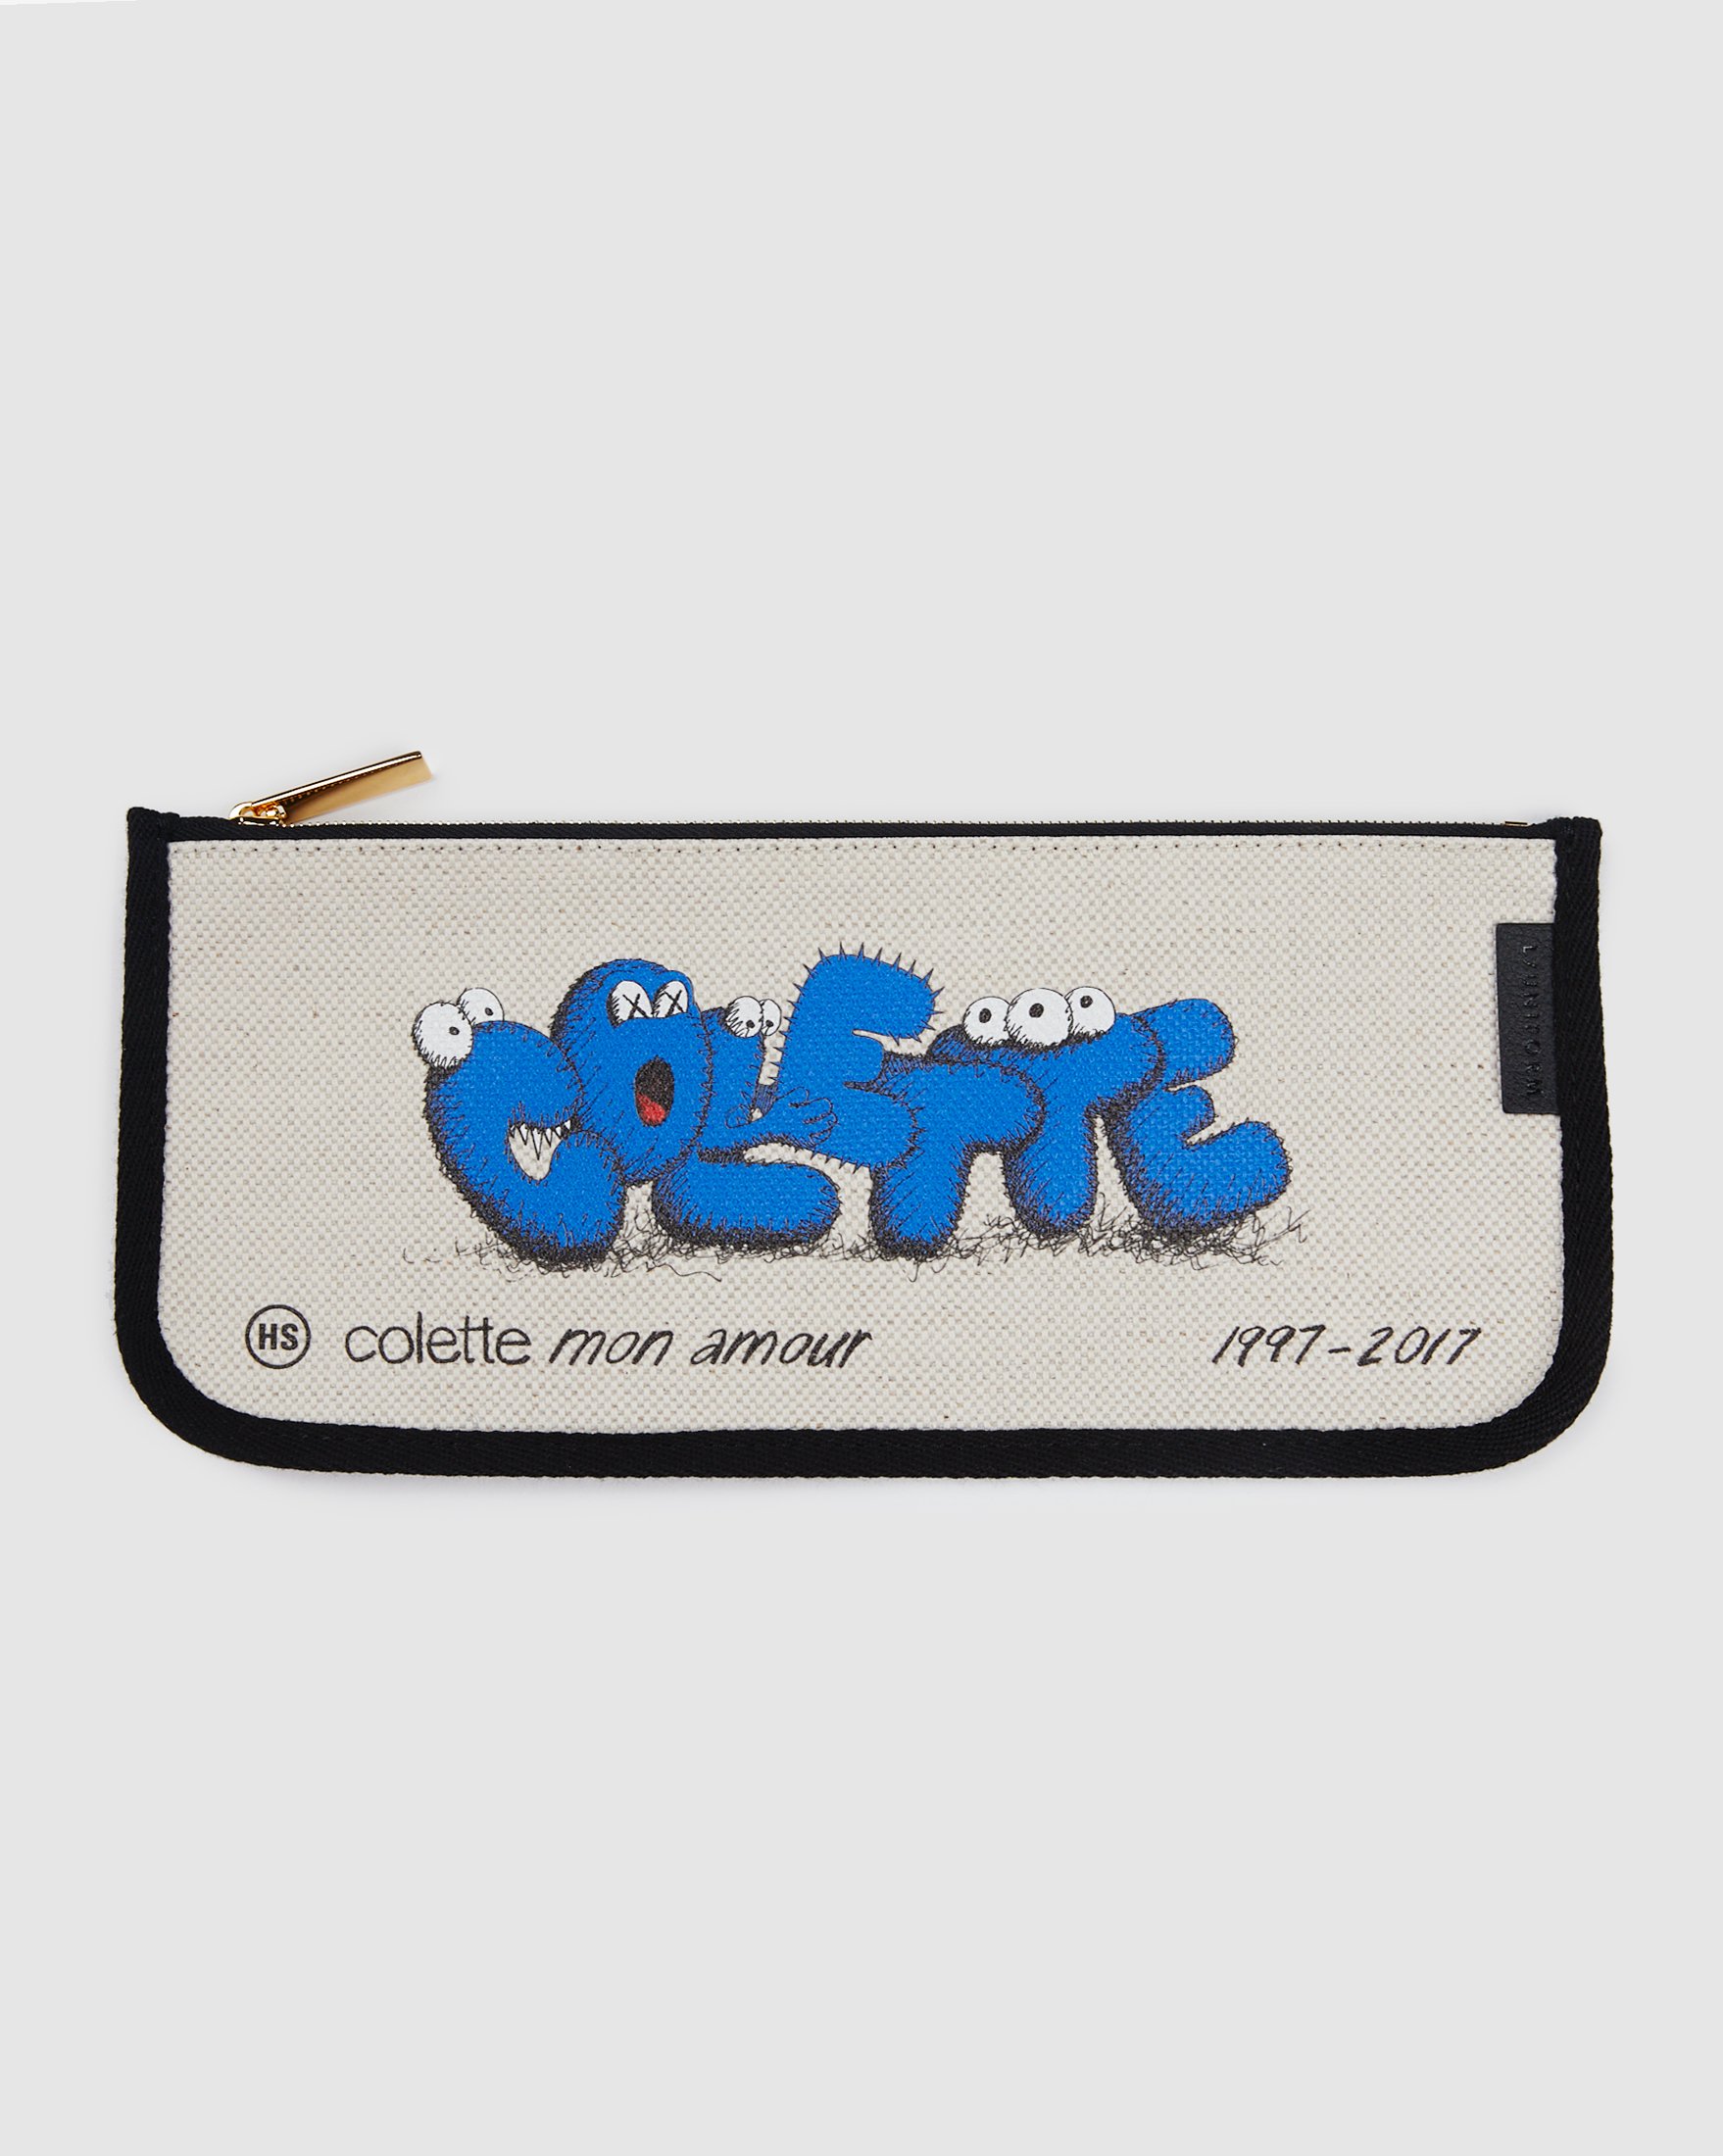 Colette Mon Amour - KAWS Beige Pencil Case - Desk Accessories - Beige - Image 1